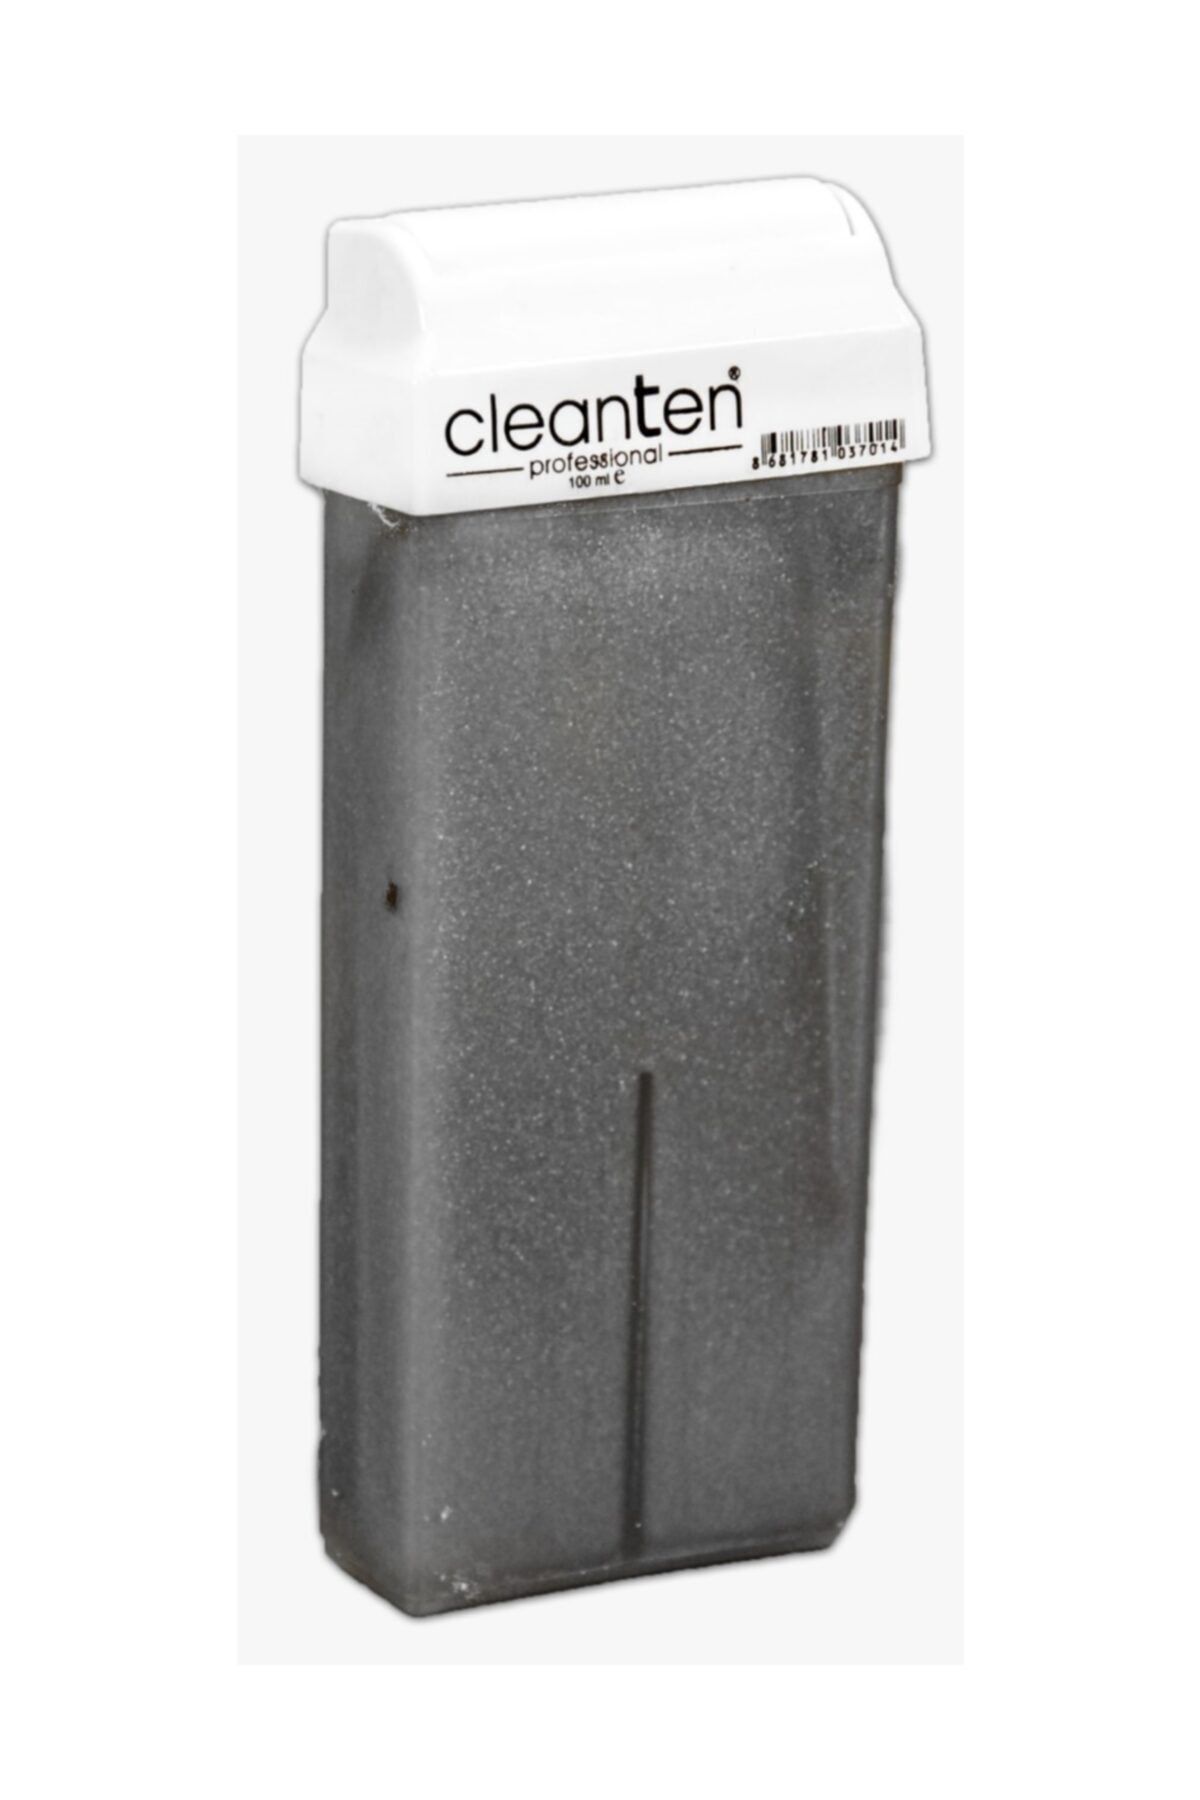 Clean Ten Sılver Kartuş Ağda Hasas Ciltler Için 100 ml